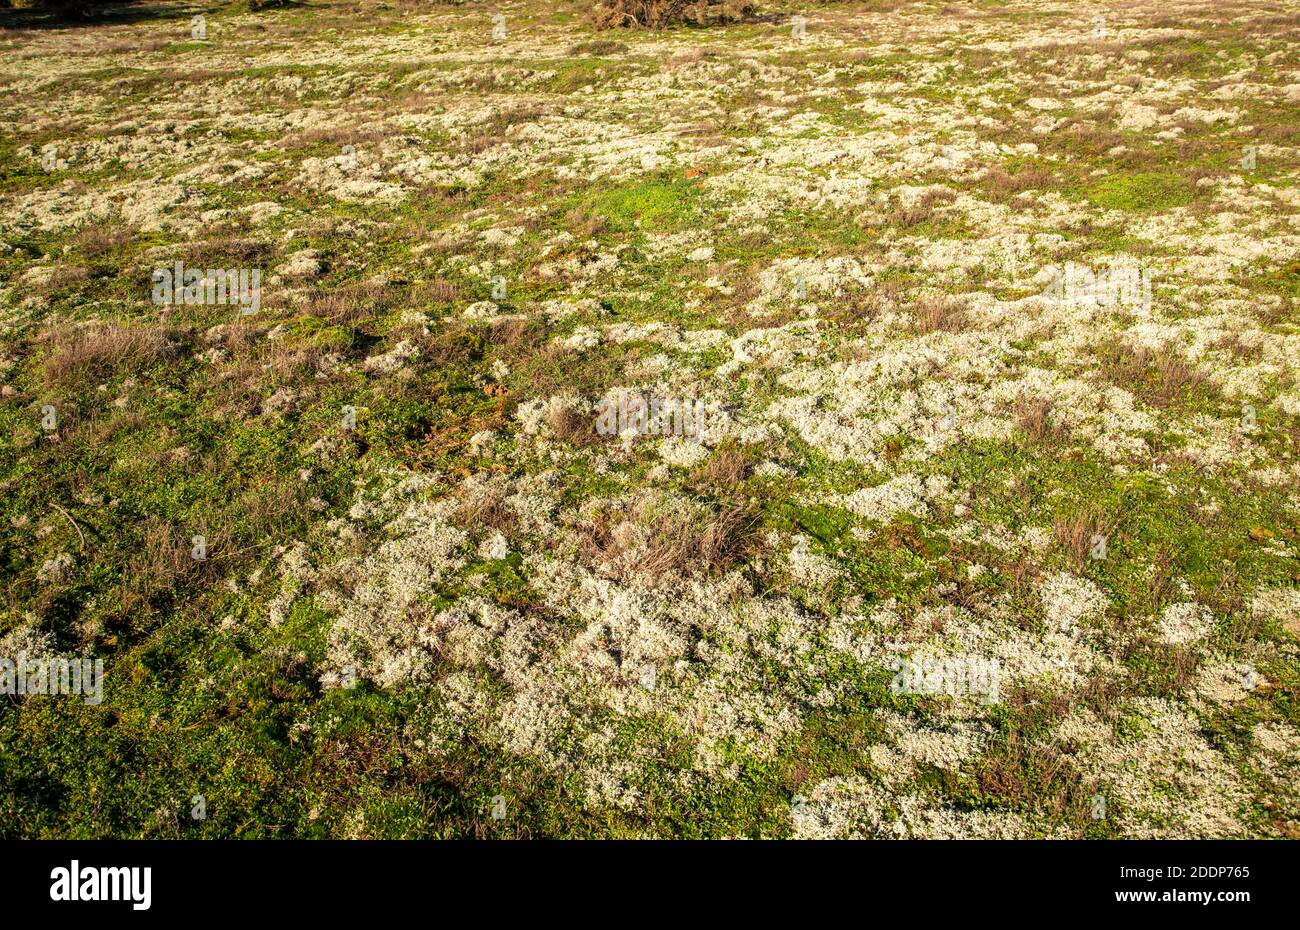 Lichen di muschio di renna, Cladonia rangiferina, che cresce su un'area aperta di brughiera, Suffolk Sandlings AONB, Inghilterra, UK Foto Stock